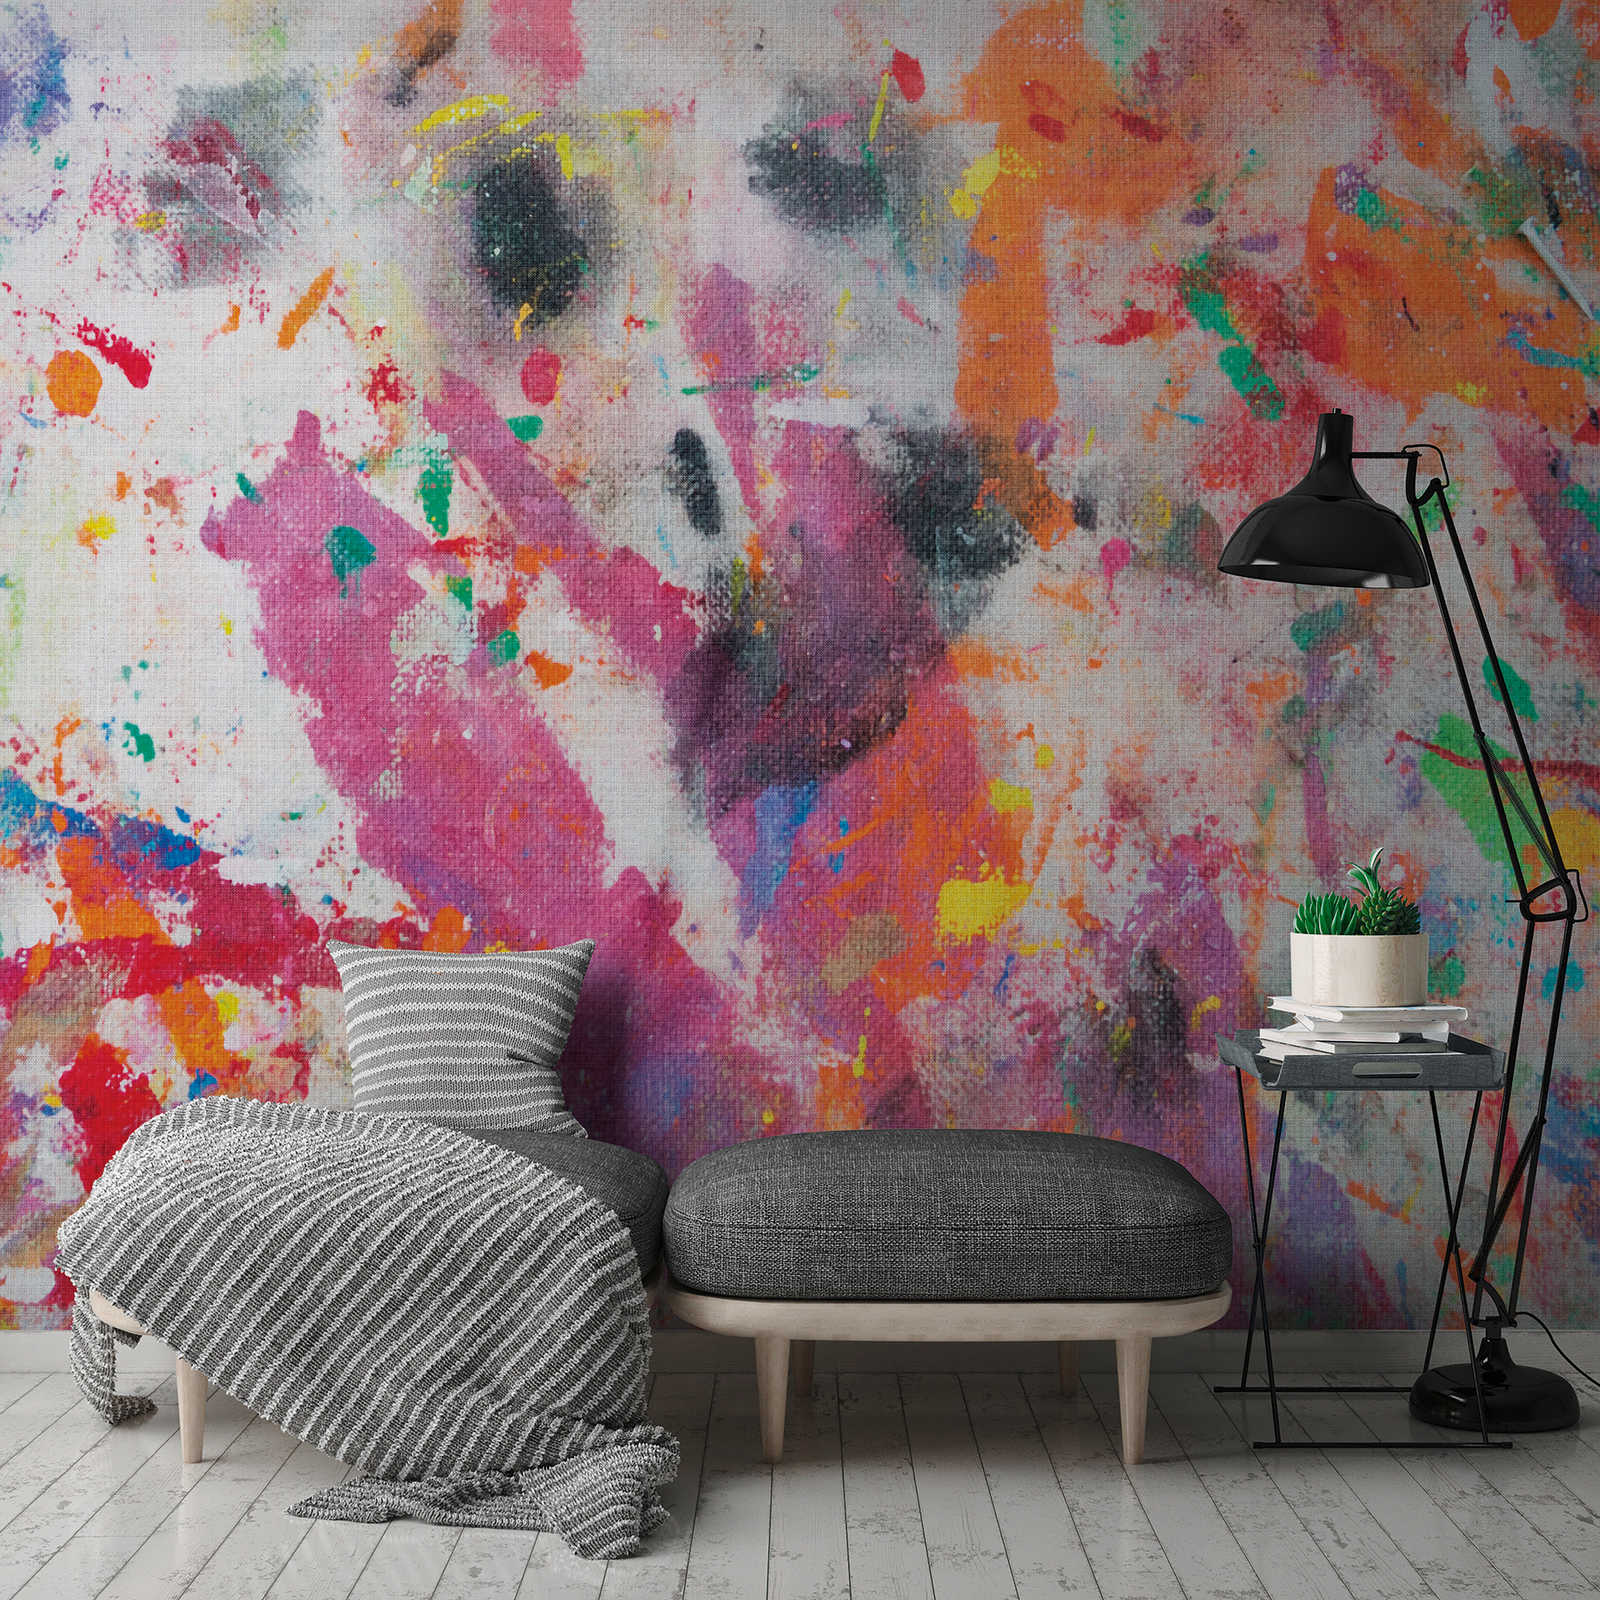 Behang nieuwigheid - motief behang kleurrijke doek, abstract ontwerp
